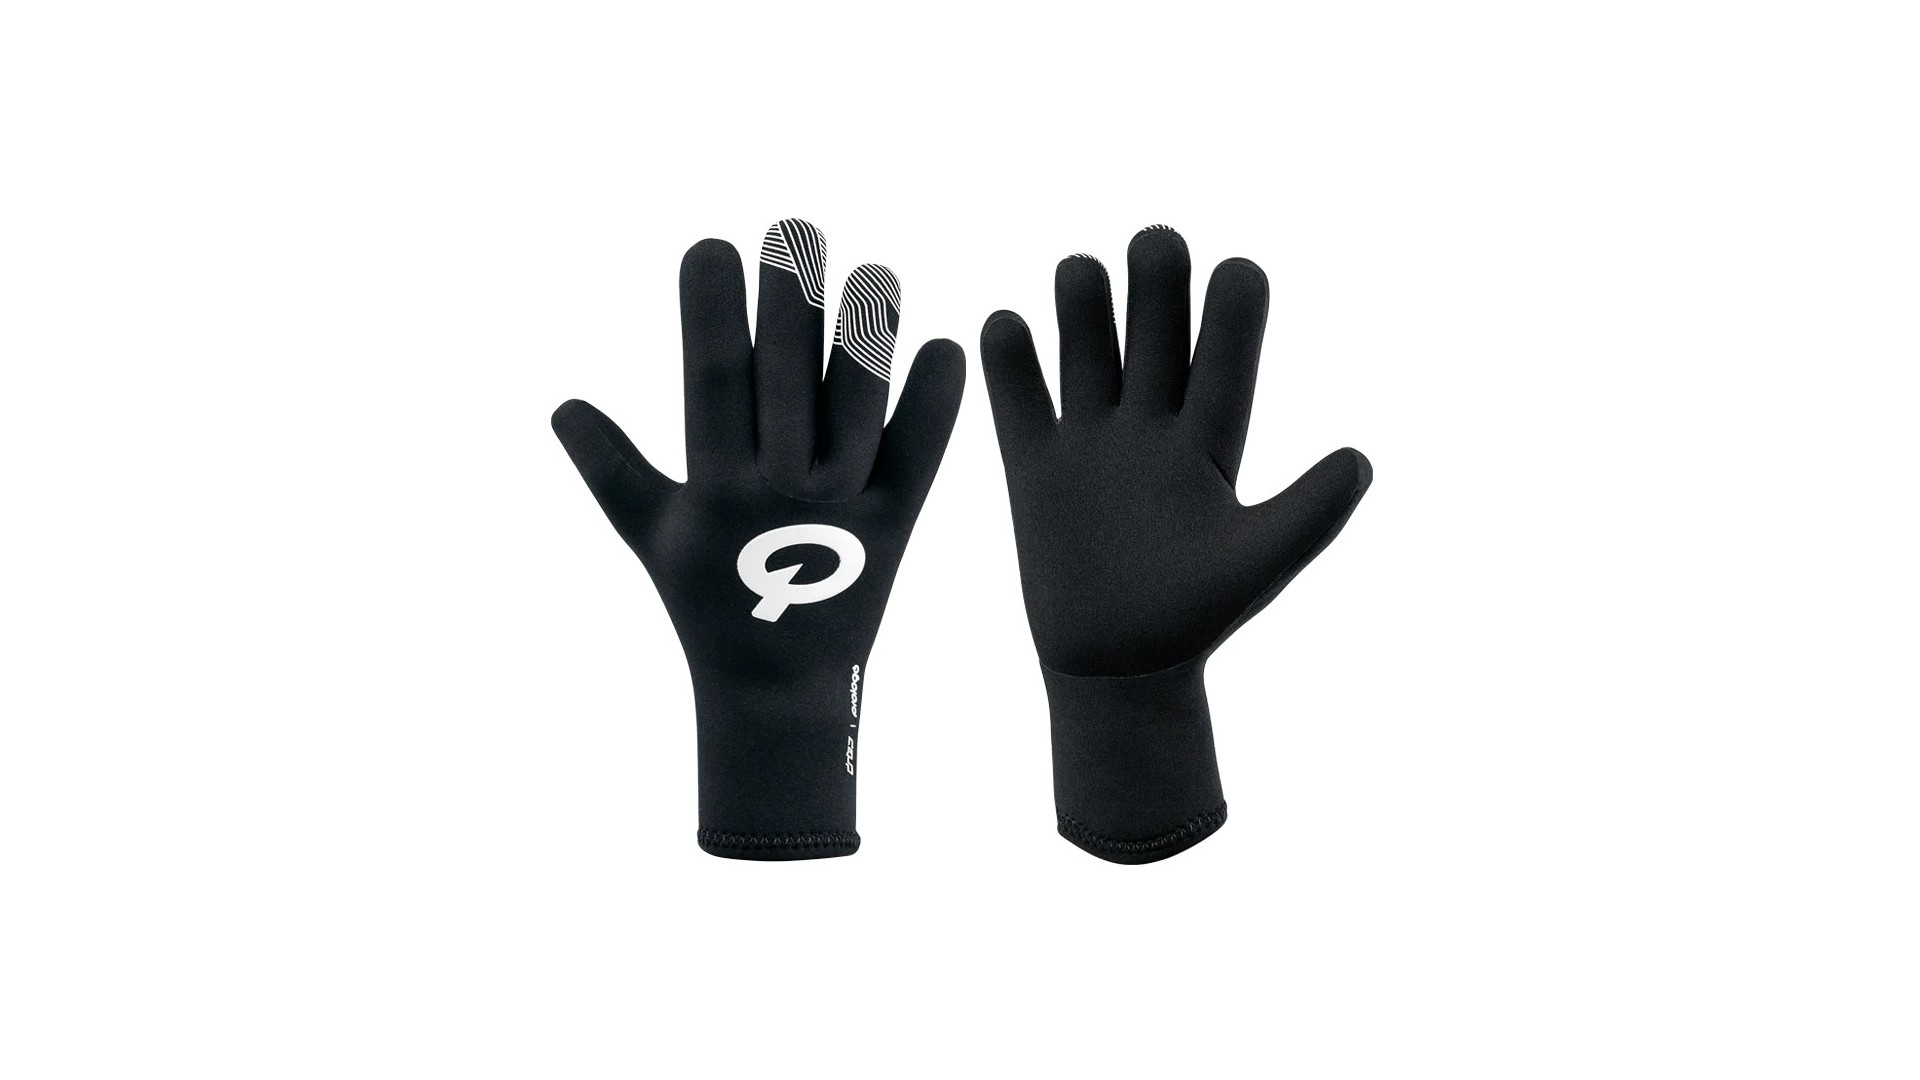 Rękawiczki PROLOGO DROP NEOPRENE wodoodporne, długie palce, czarne z białym logo roz. L - PR-GLOVELFBW13-L